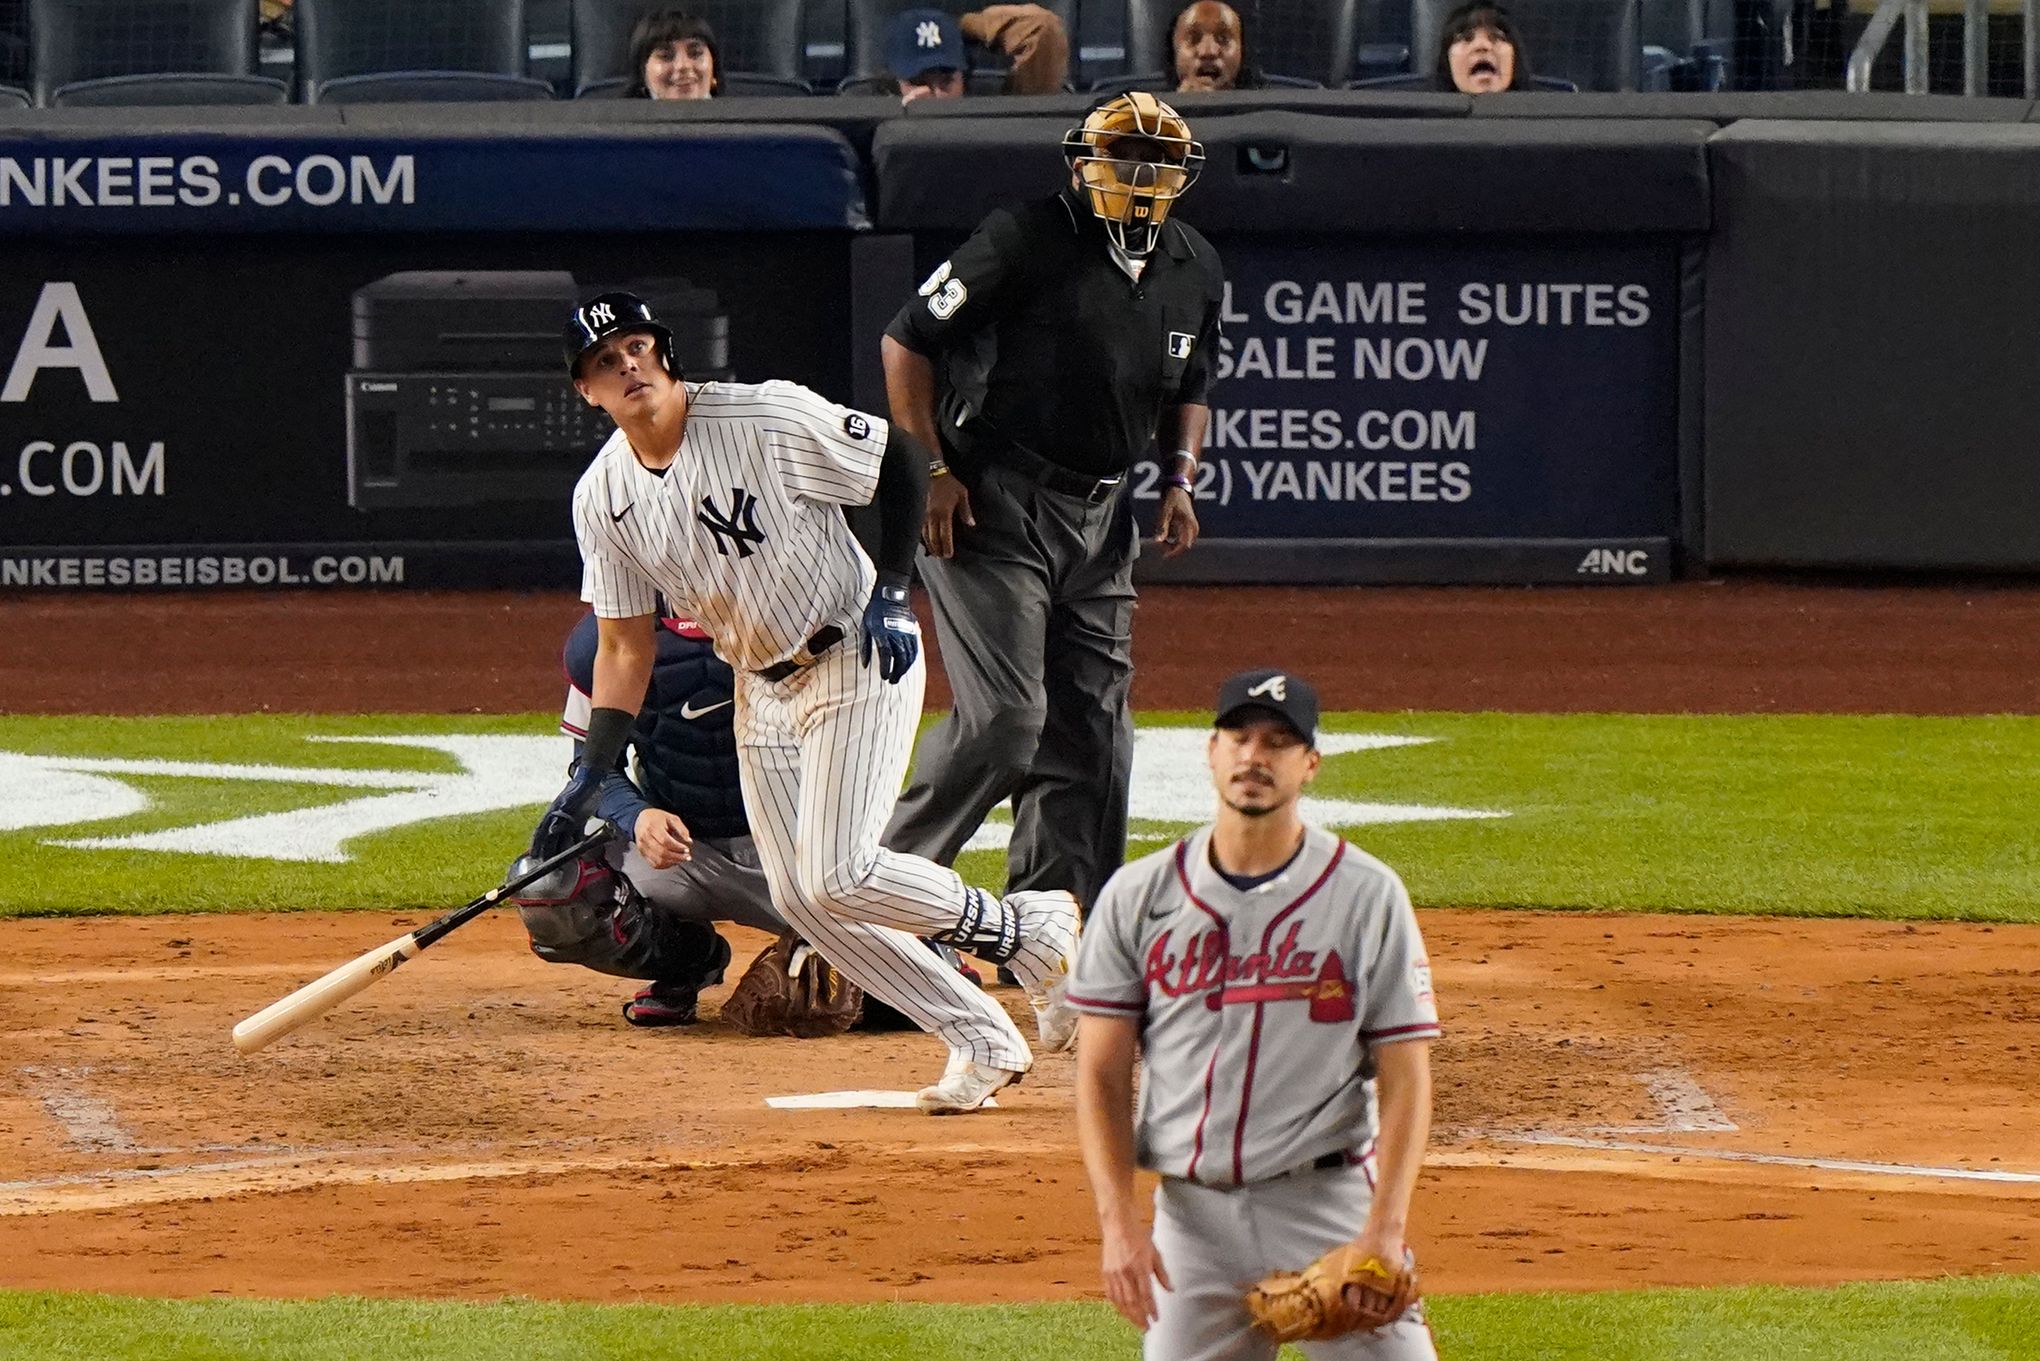 New York Yankees: Can Gio Urshela repeat his 2019 season?